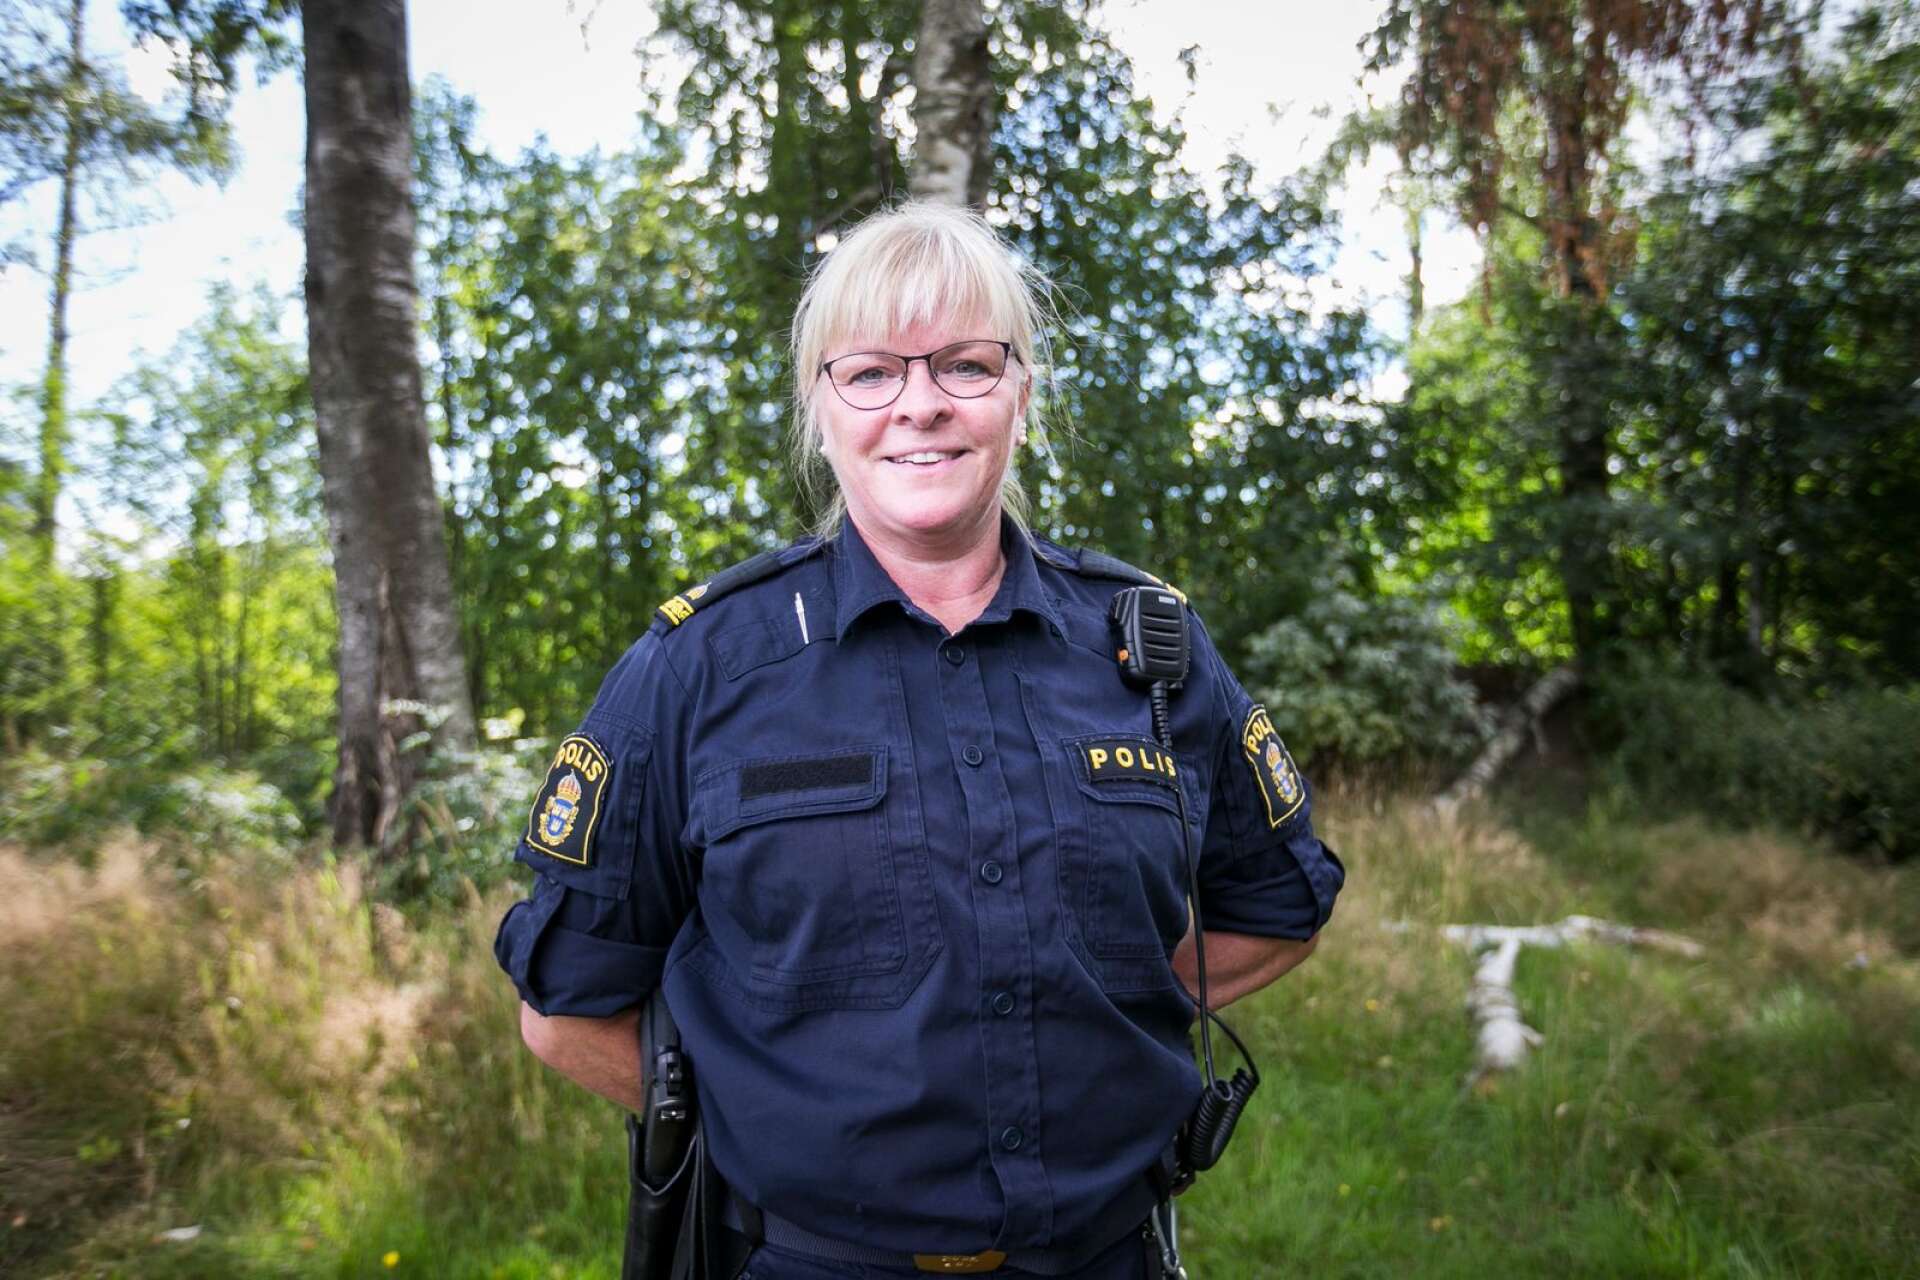 Birgitta Janssons mål var att bli polis. Som 20-åring kom hon in på polisskolan och sedan dess har hon stannat kvar inom yrket.